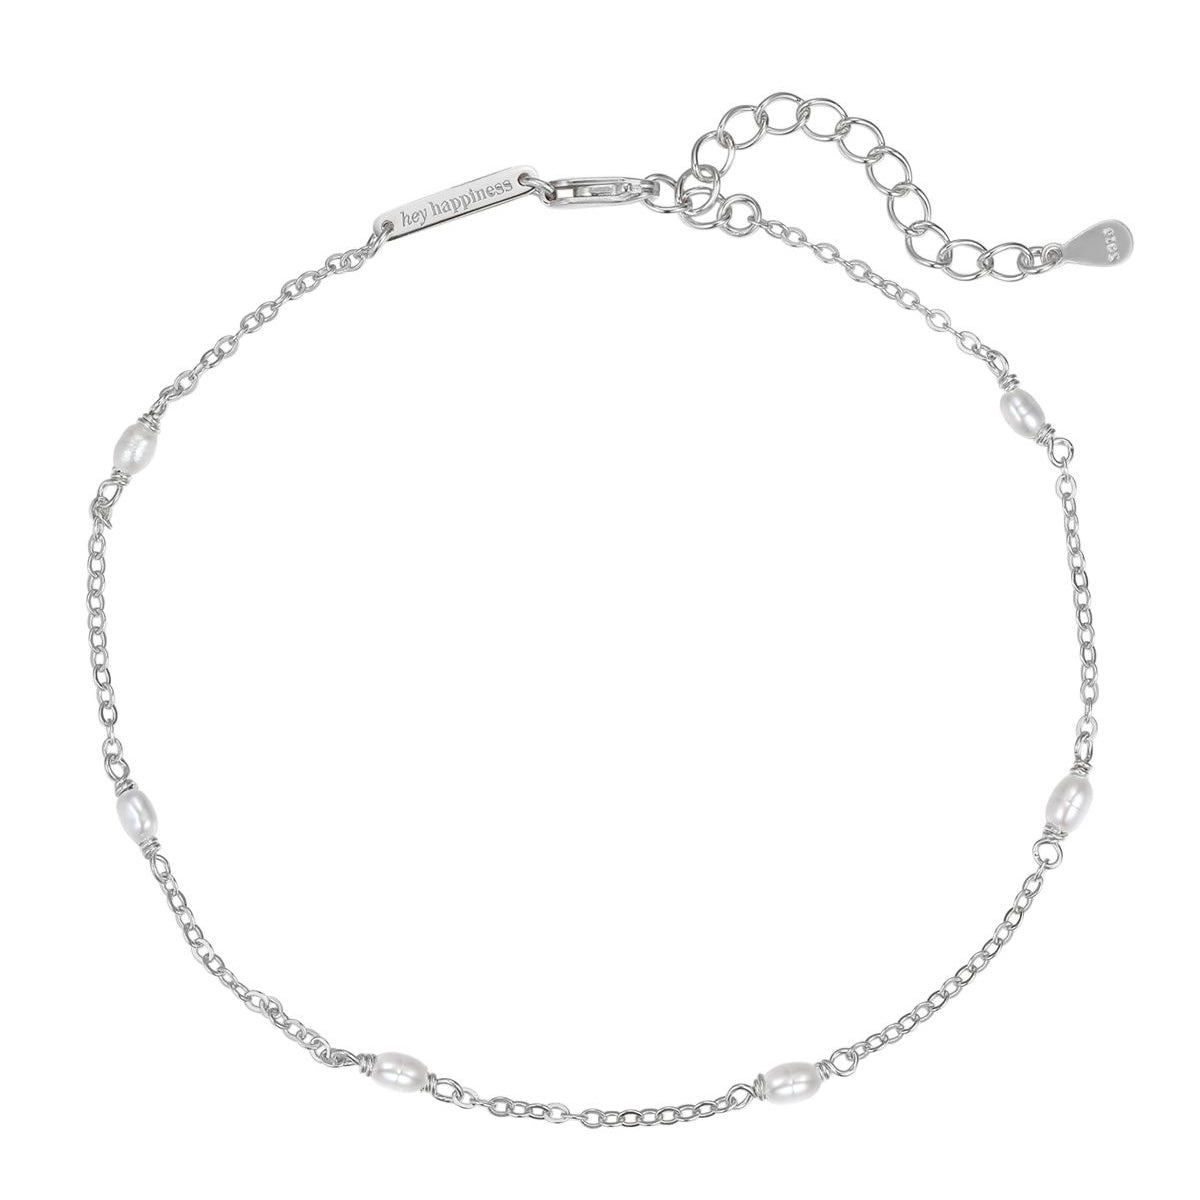 Bracelet de Cheville Chaîne Perle Argent 925